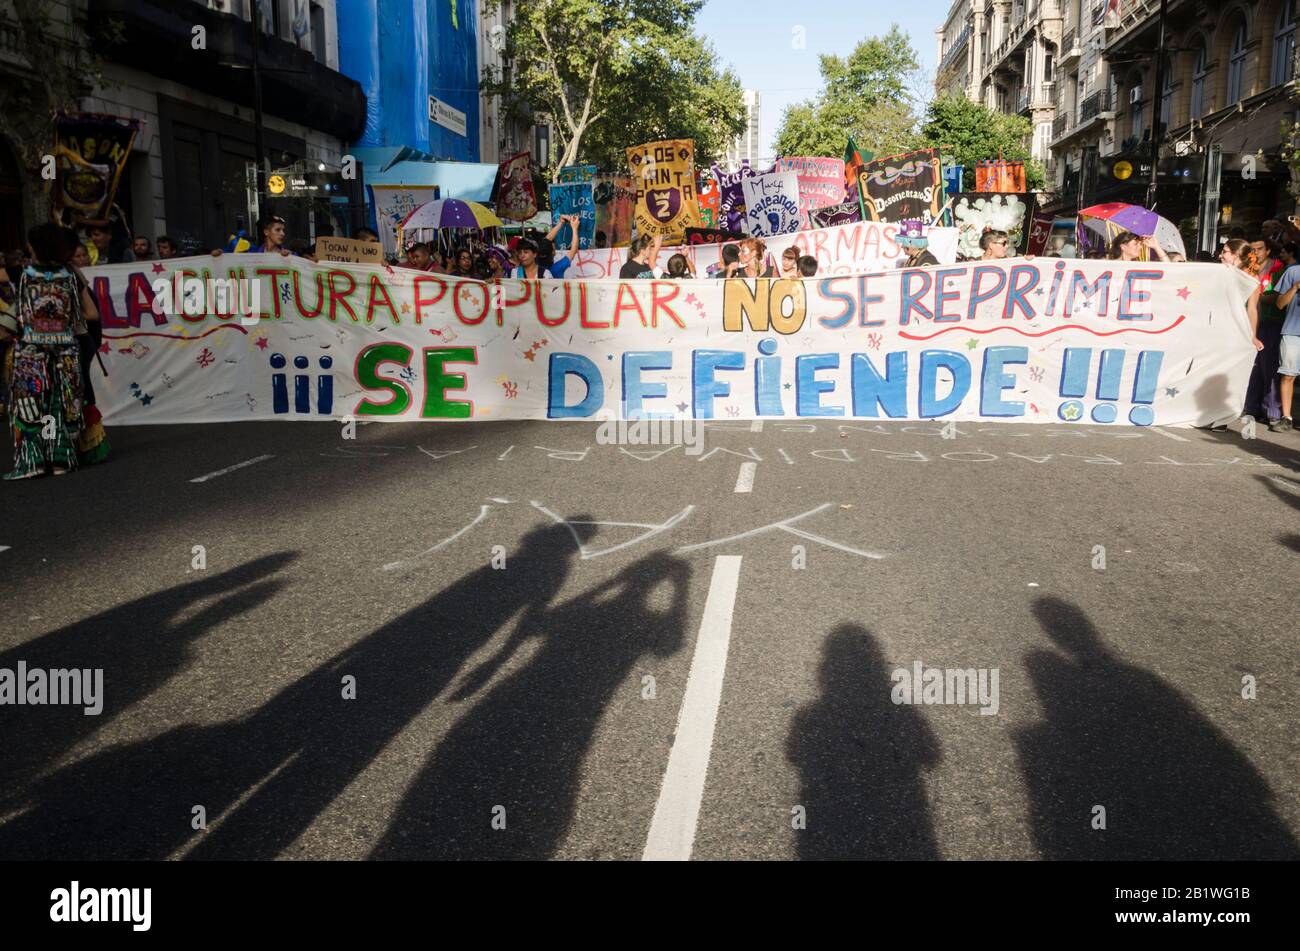 Buenos Aires / Argentina; 2 de febrero de 2016: No reprimes la cultura popular, la defendes. Manifestación realizada después de que las fuerzas policiales atacaron violentamente una murga Foto de stock